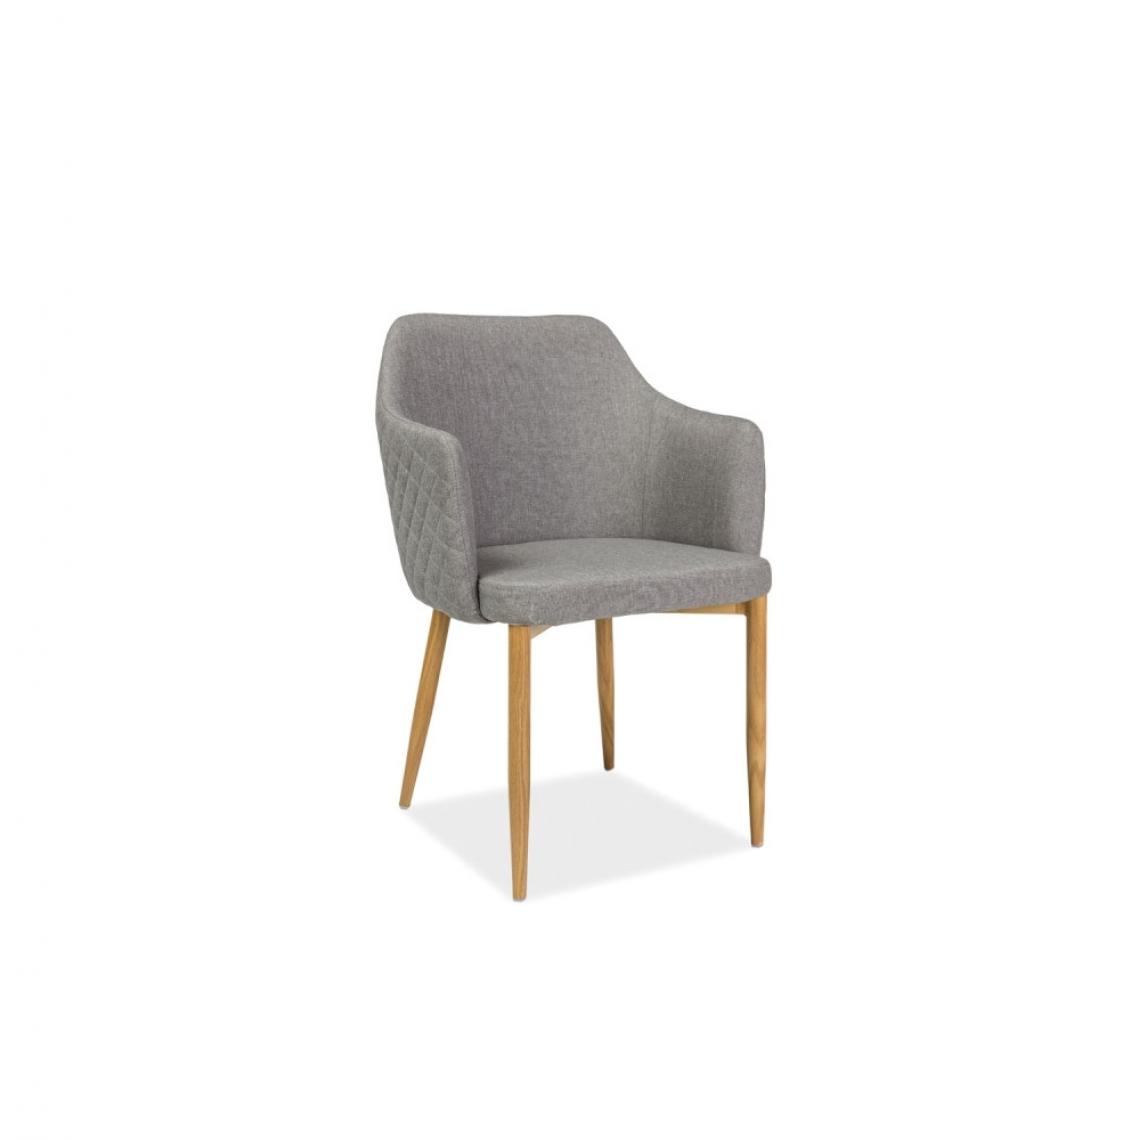 Ac-Deco - Chaise fauteuil en tissu - Astor - 46 x 46 x 84 cm - Gris - Chaises